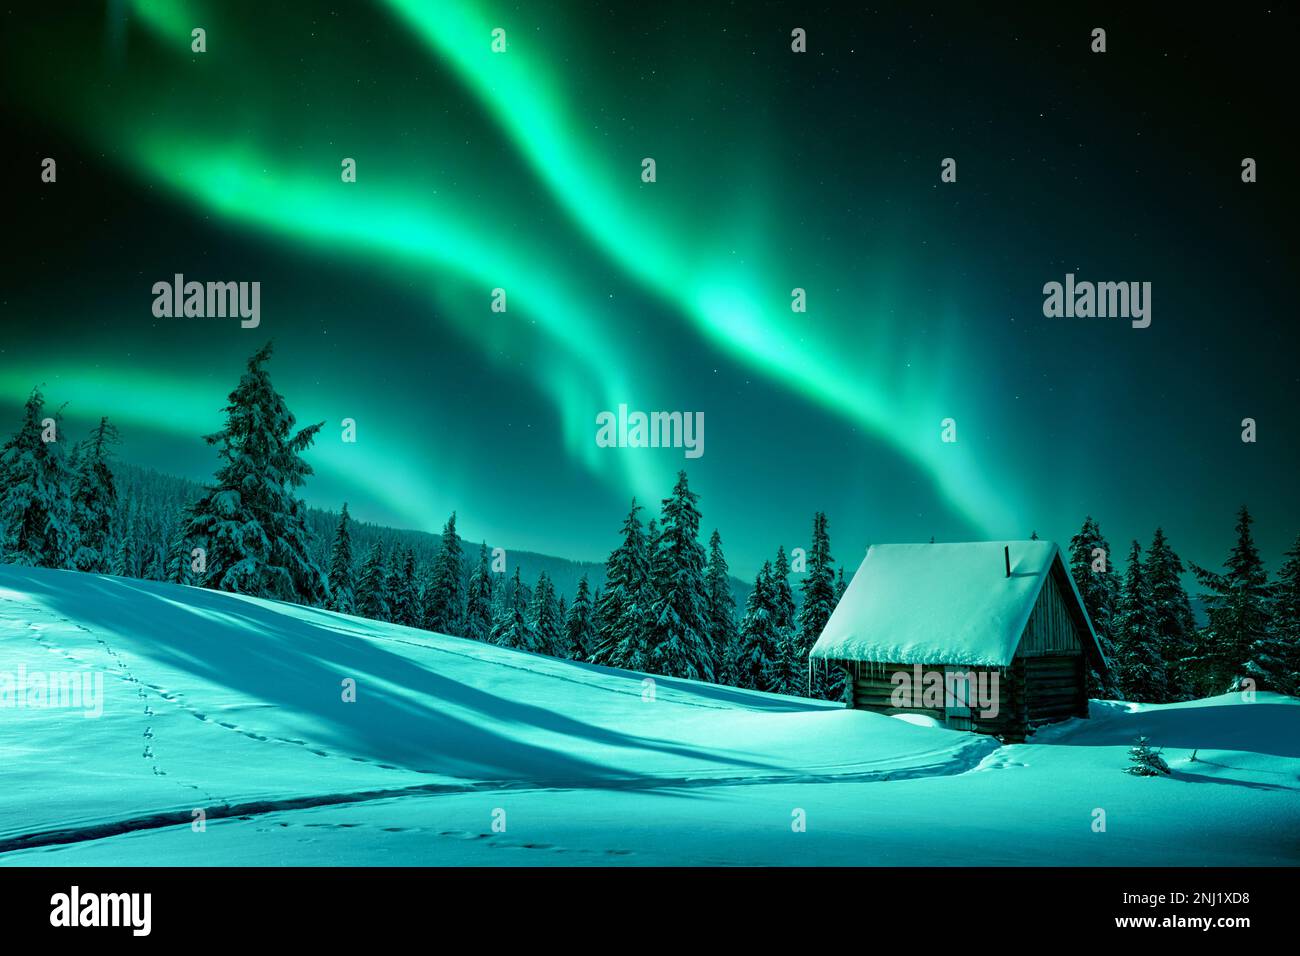 Fantastico paesaggio invernale con casa in legno in montagna innevata e northen luce nel cielo notturno Foto Stock